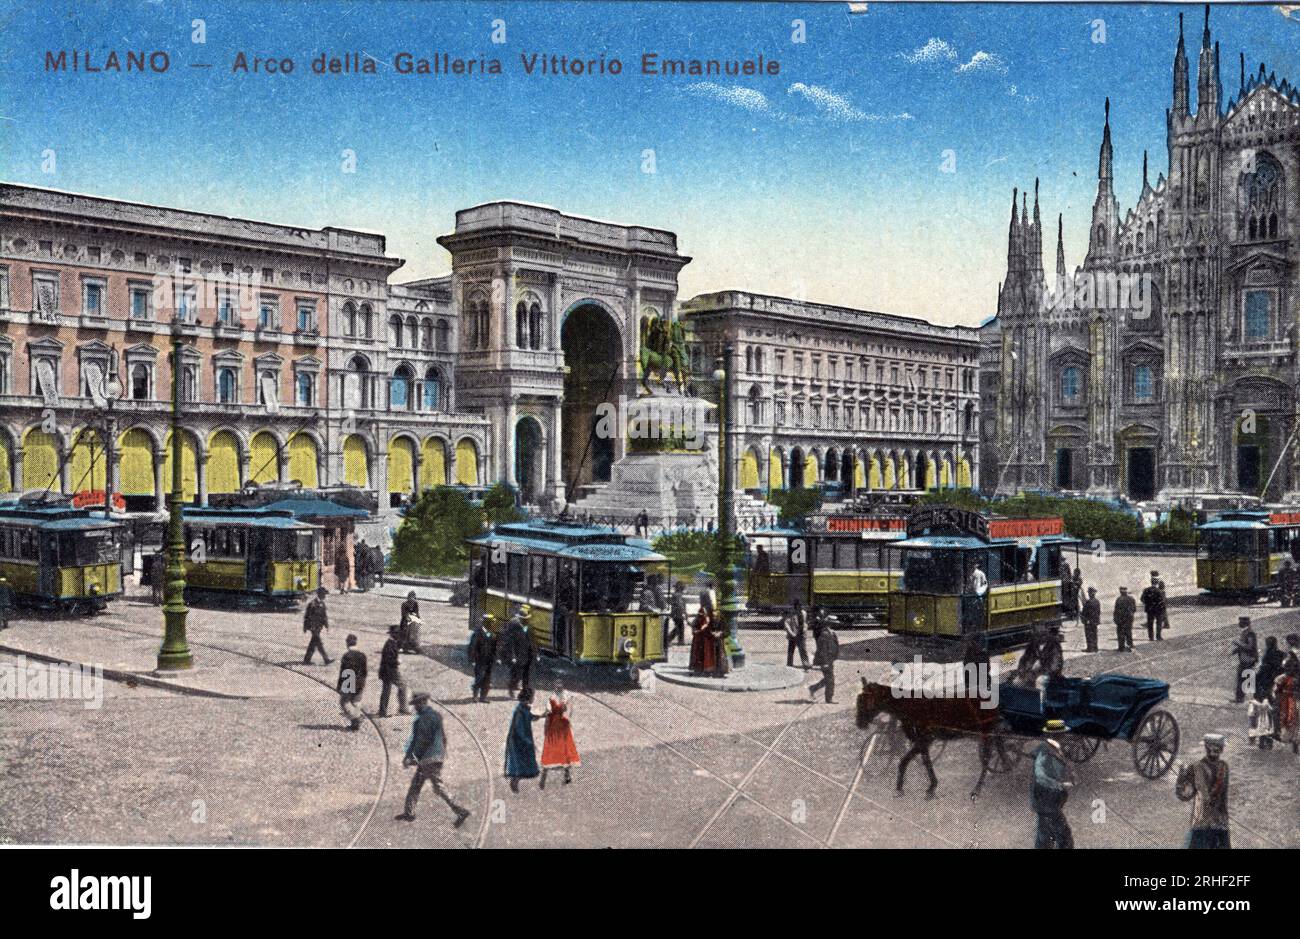 Italie, Milan : tramways sur la piazza del Duomo et arc de triomphe a l'entre de la galerie Victor Emmanuel (Victor-Emmanuel) (Galleria Vittorio Emanuele) - carte postale fin 19e-20e siecle Banque D'Images